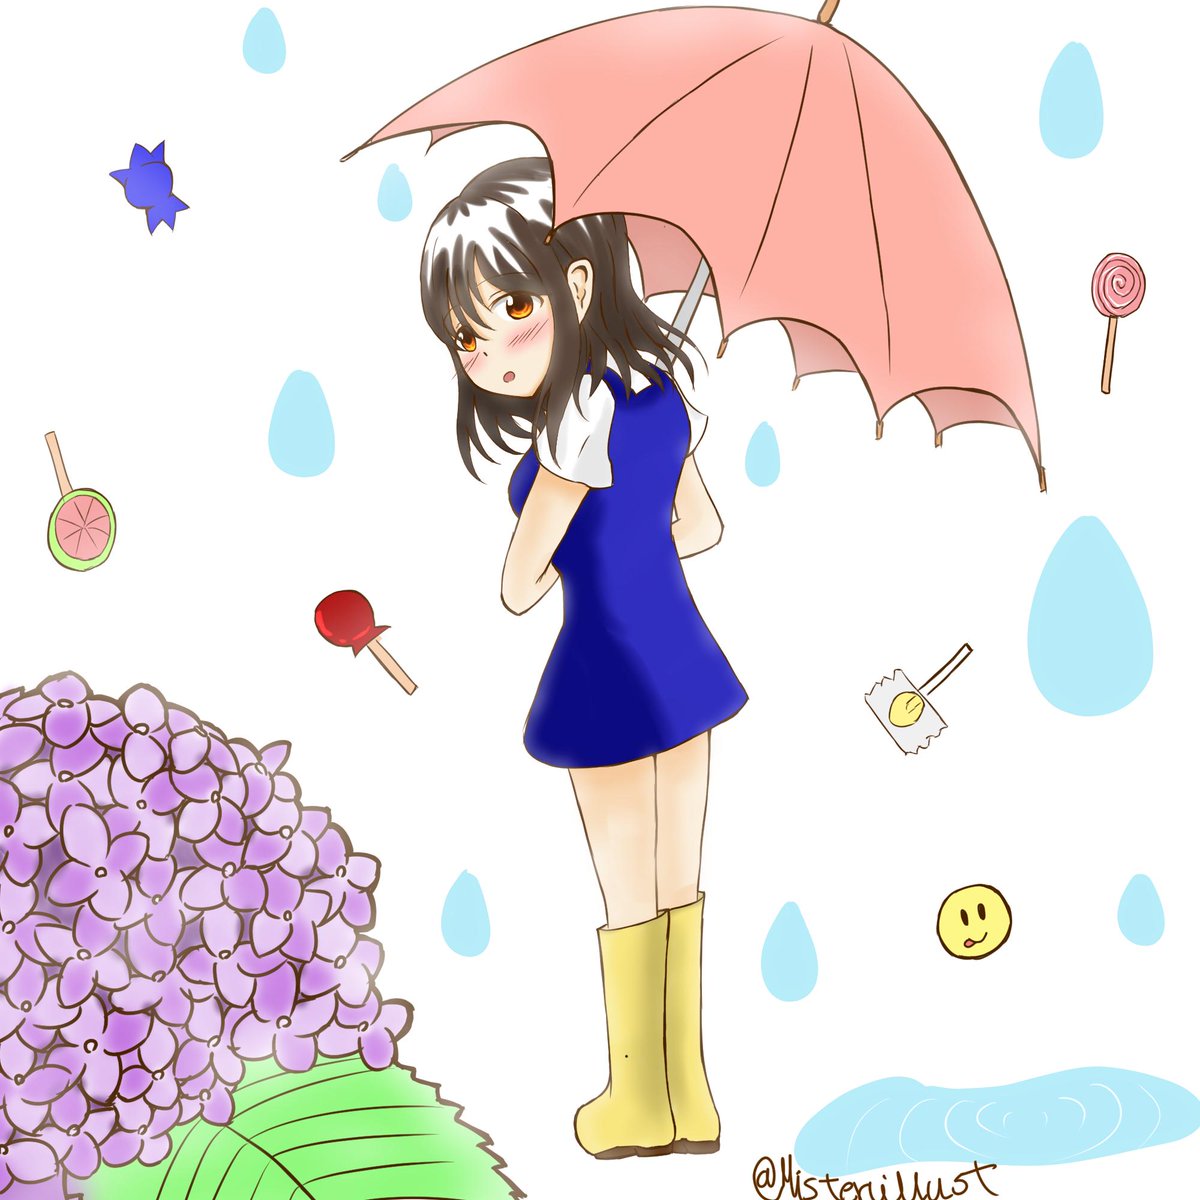 絵描きのミスタァ Sur Twitter 梅雨のイラストを描きました イラスト 梅雨 雨 飴 紫陽花 アジサイ ６月イラスト 梅雨イラスト 梅雨入り